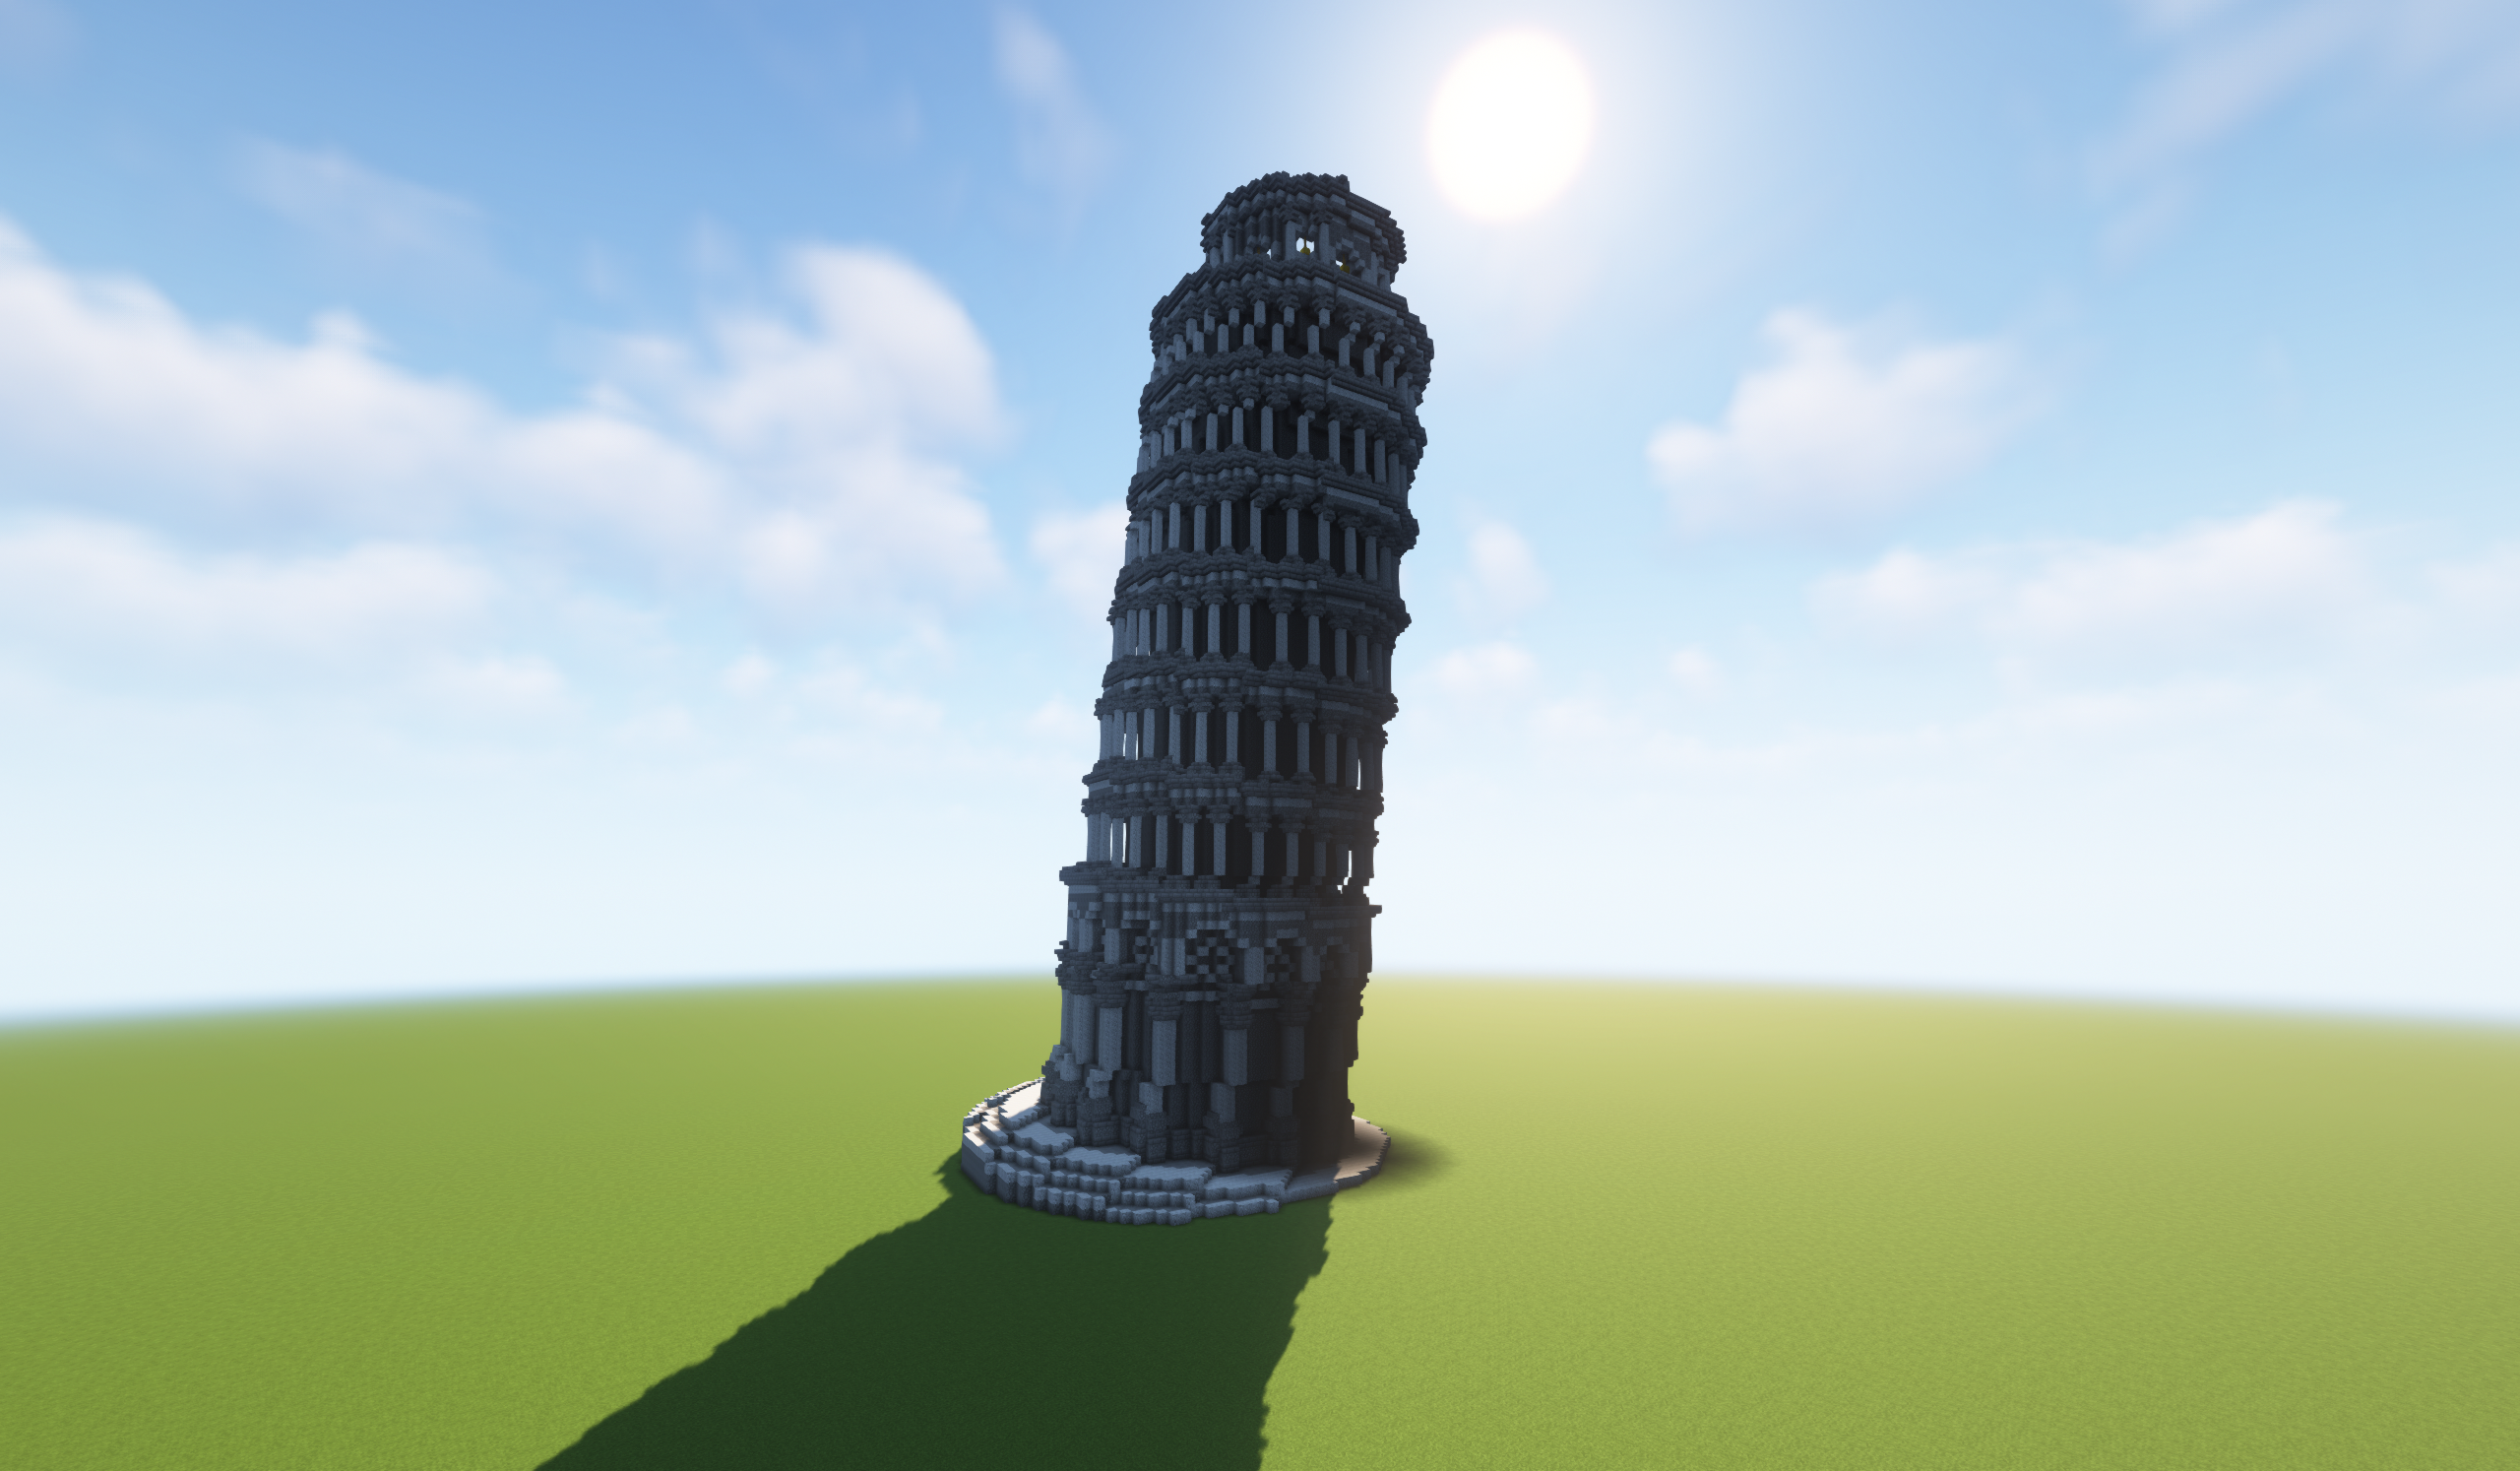 Minecract Tower of Pisa schematic (litematic)